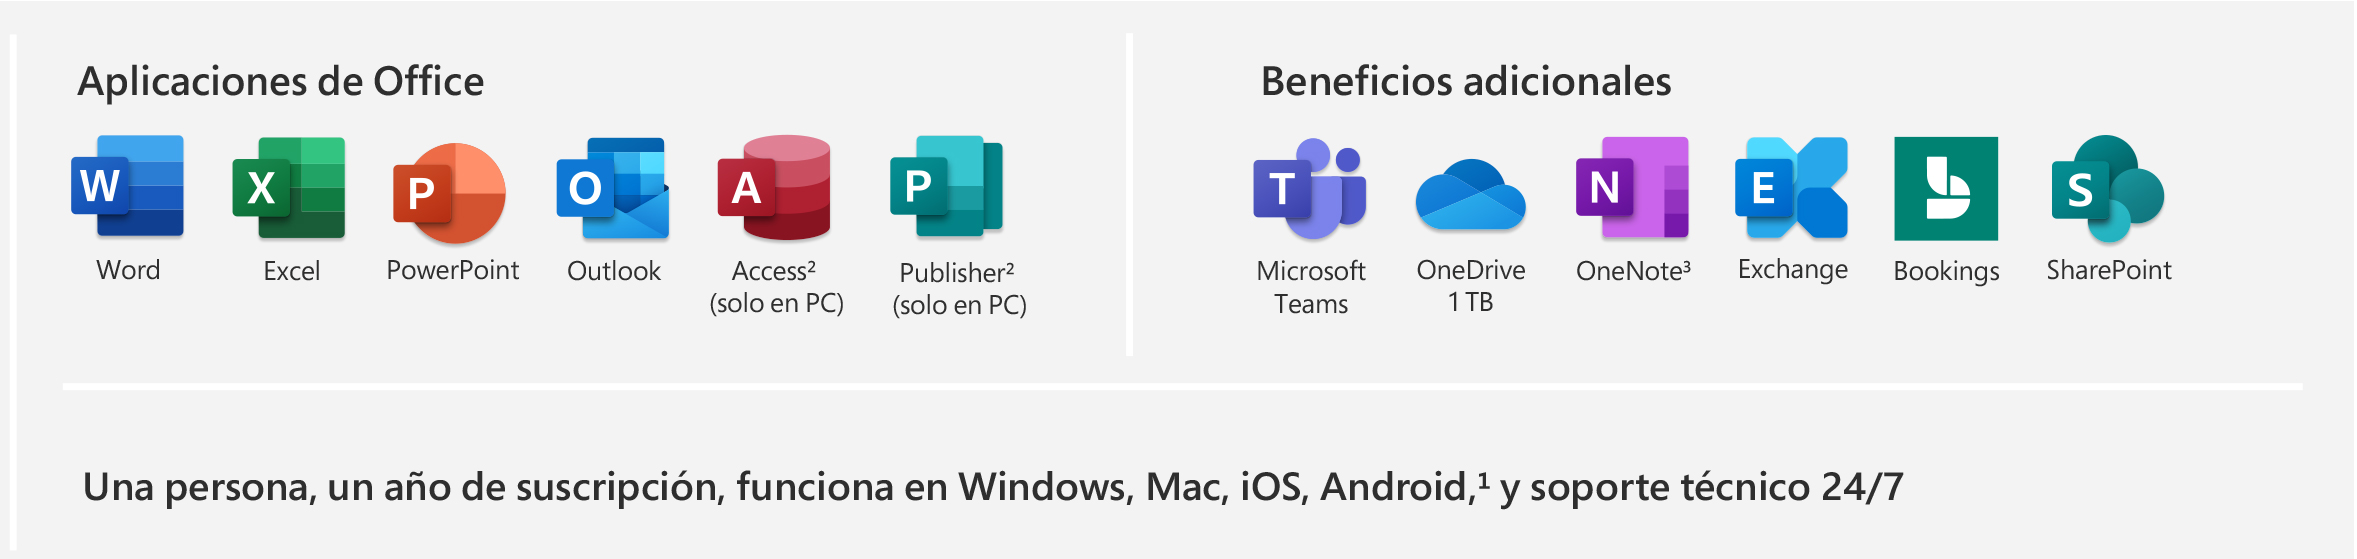 Imagen de Microsoft 365 Empresa Estándar, el cuál posee aplicaciones premium de Office y beneficios adicionales como Teams, OneDrive, OneNote, Exchange, Bookings y SharePoint. Con un año de suscripción para una persona, trabaja en Windows, Mac, iOS y Android, e incluye soporte técnico 24/7.